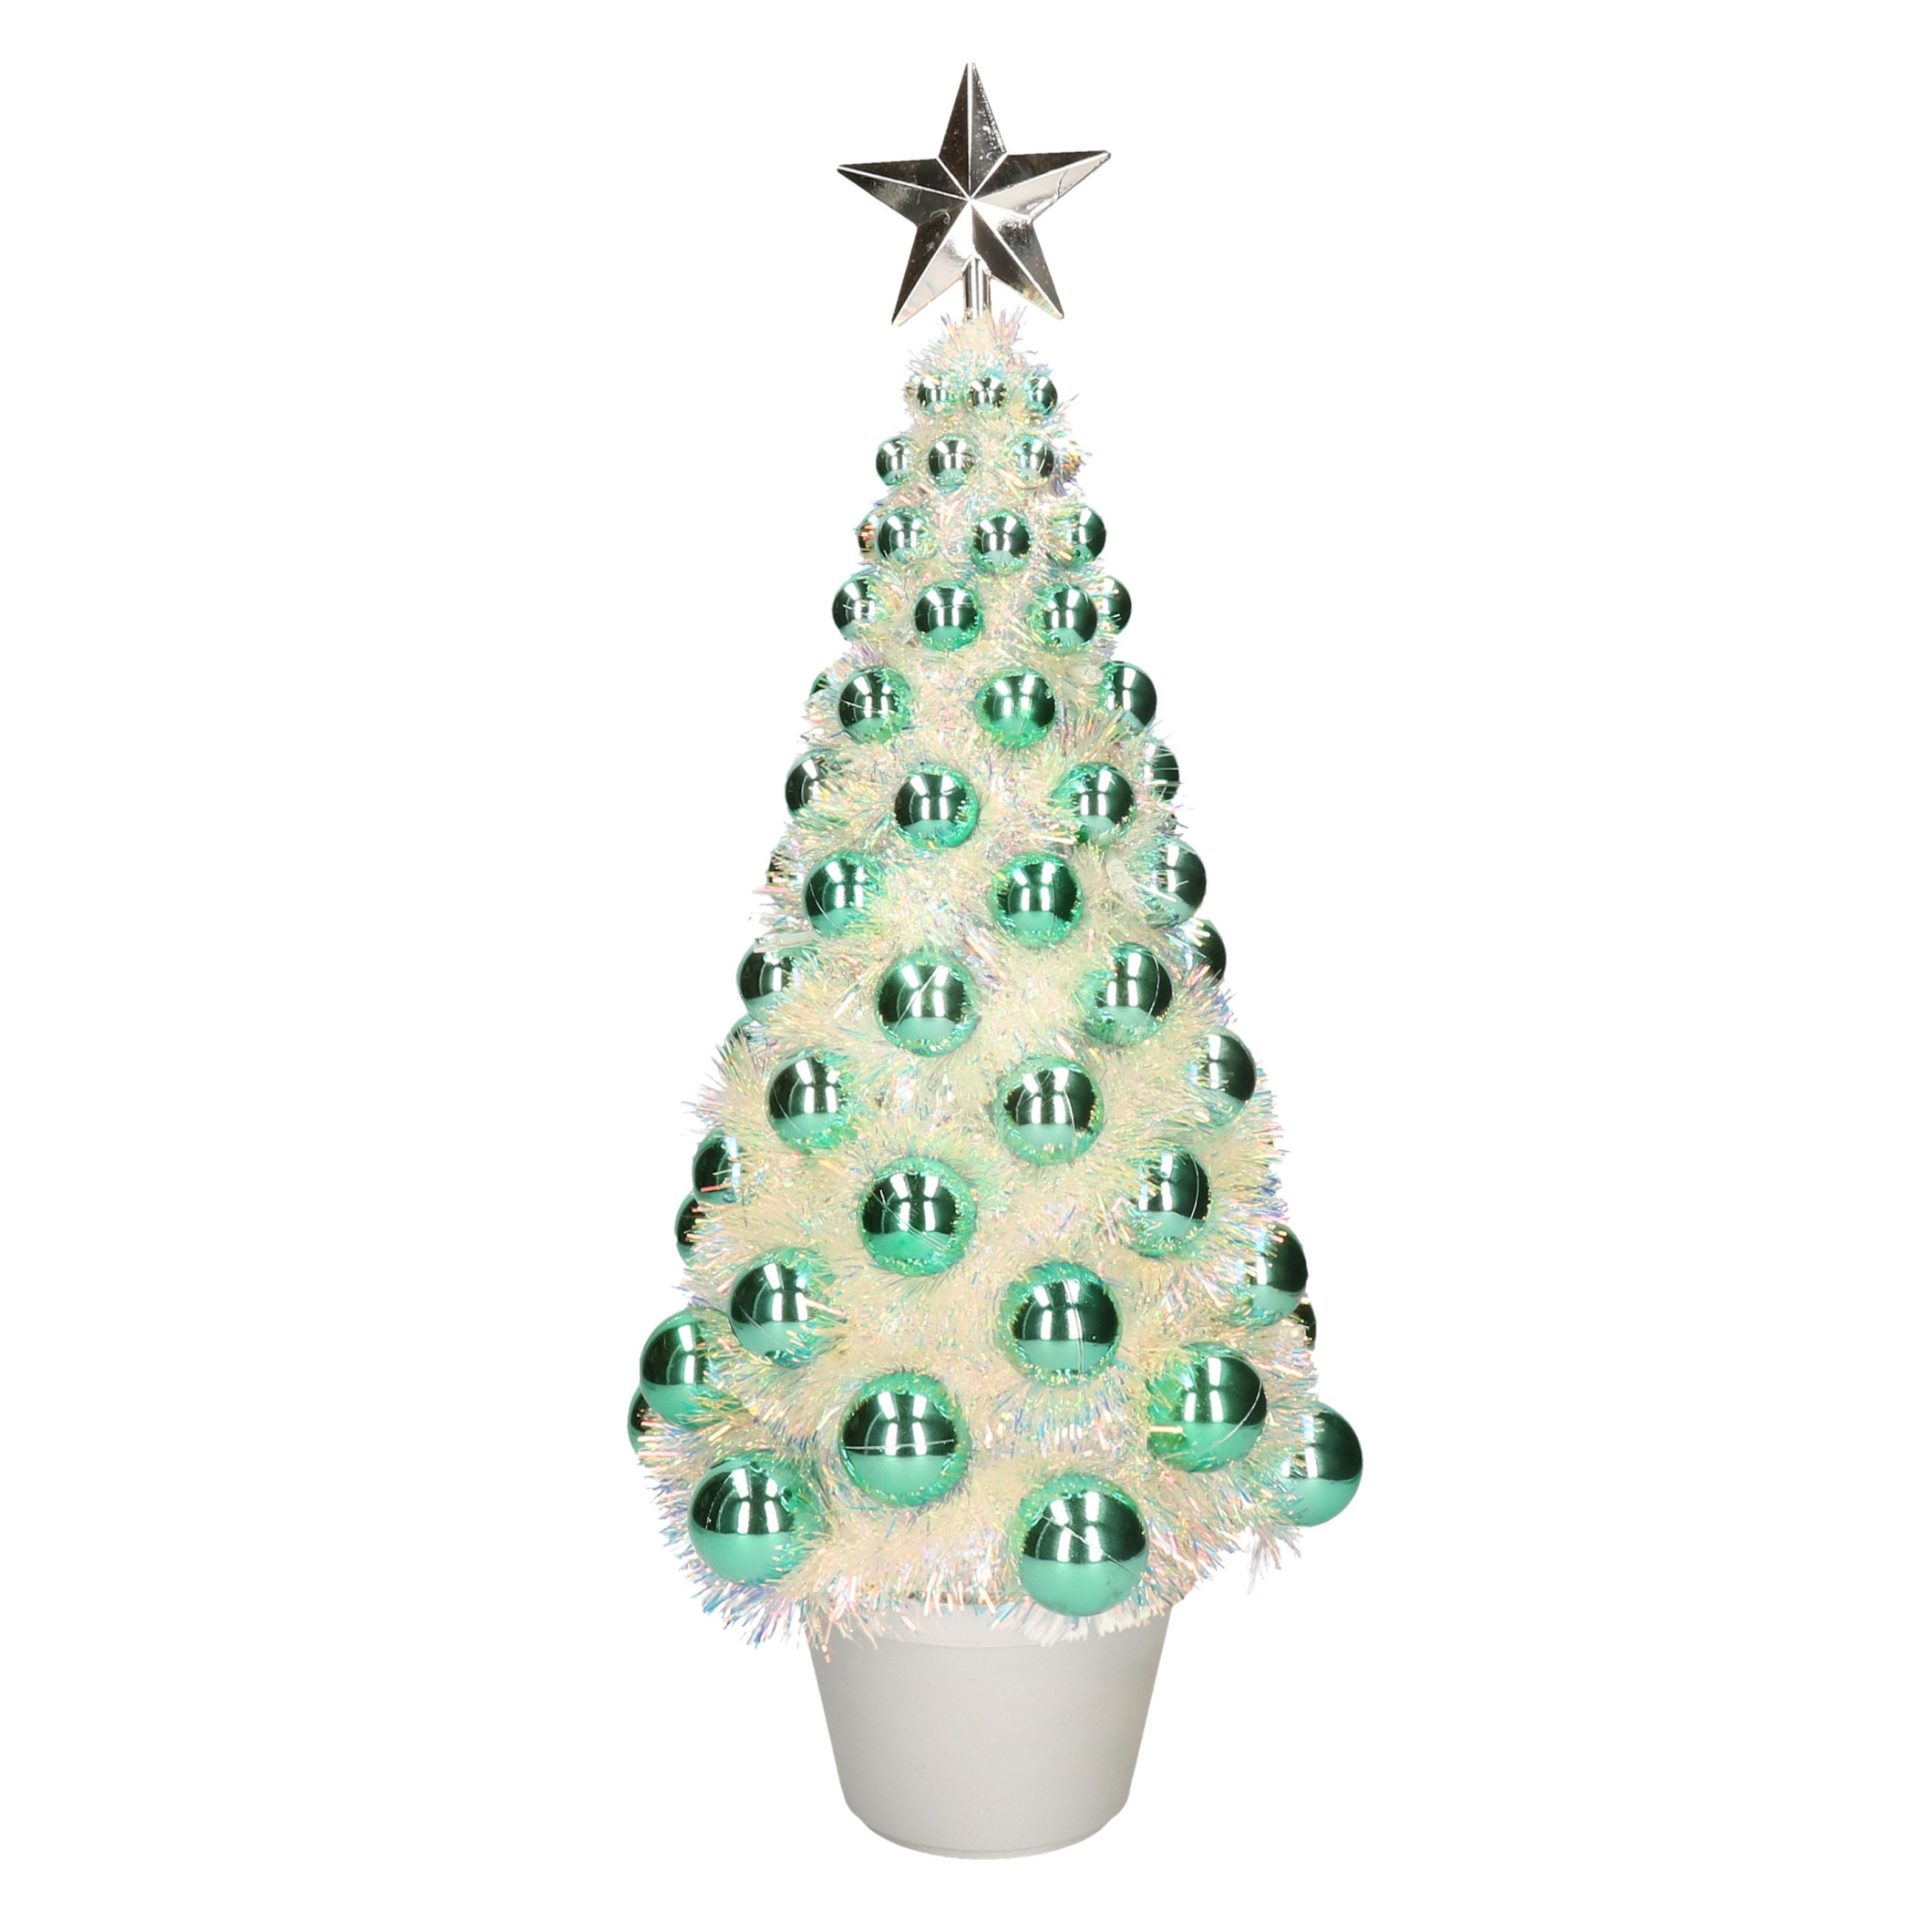 Complete mini kunst kerstboom-kunstboom groen met lichtjes 50 cm